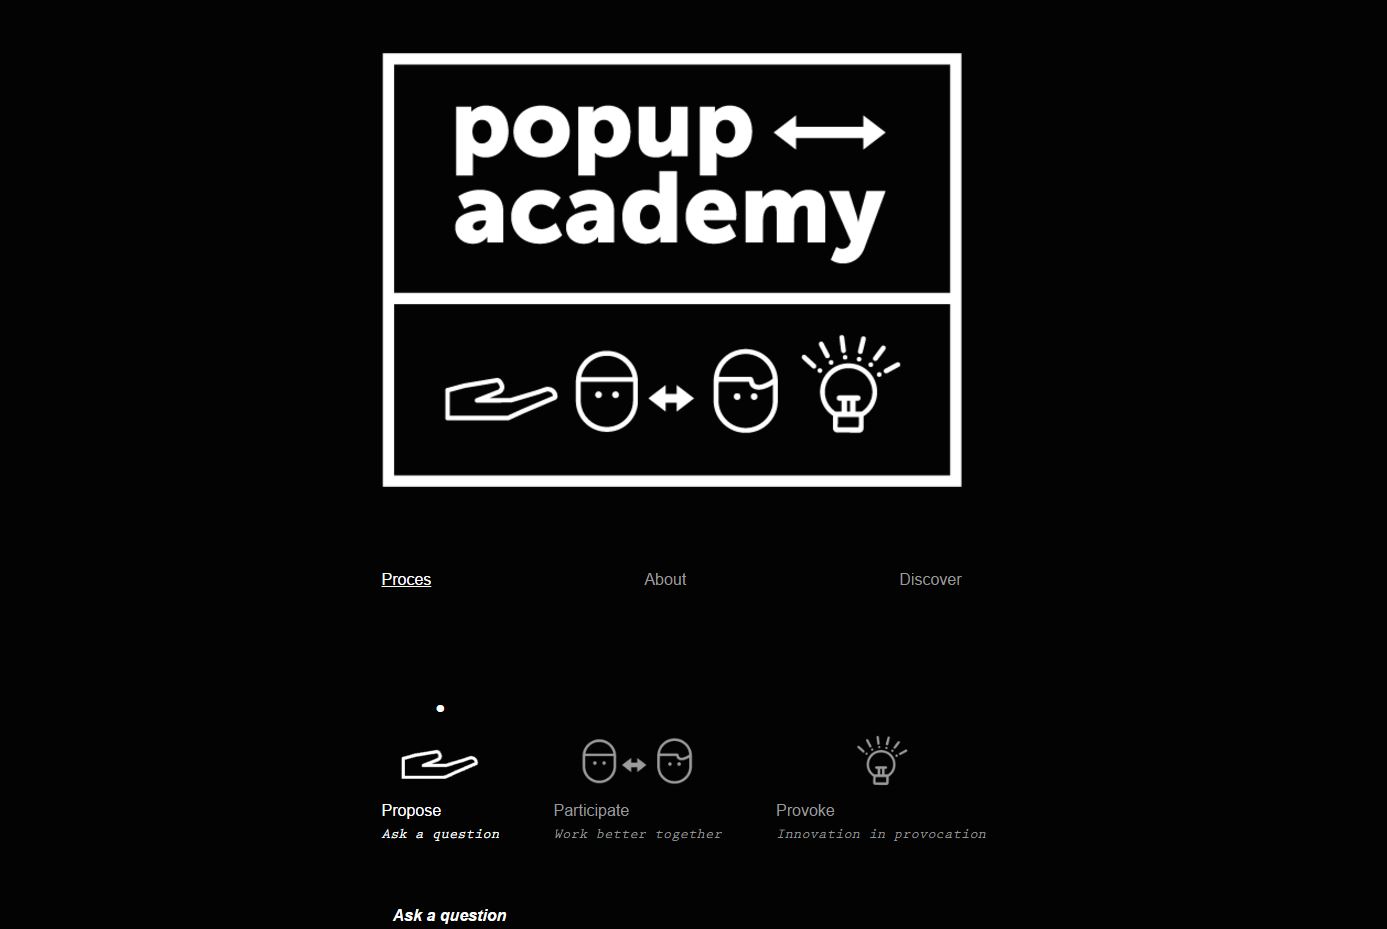 popup academy website online